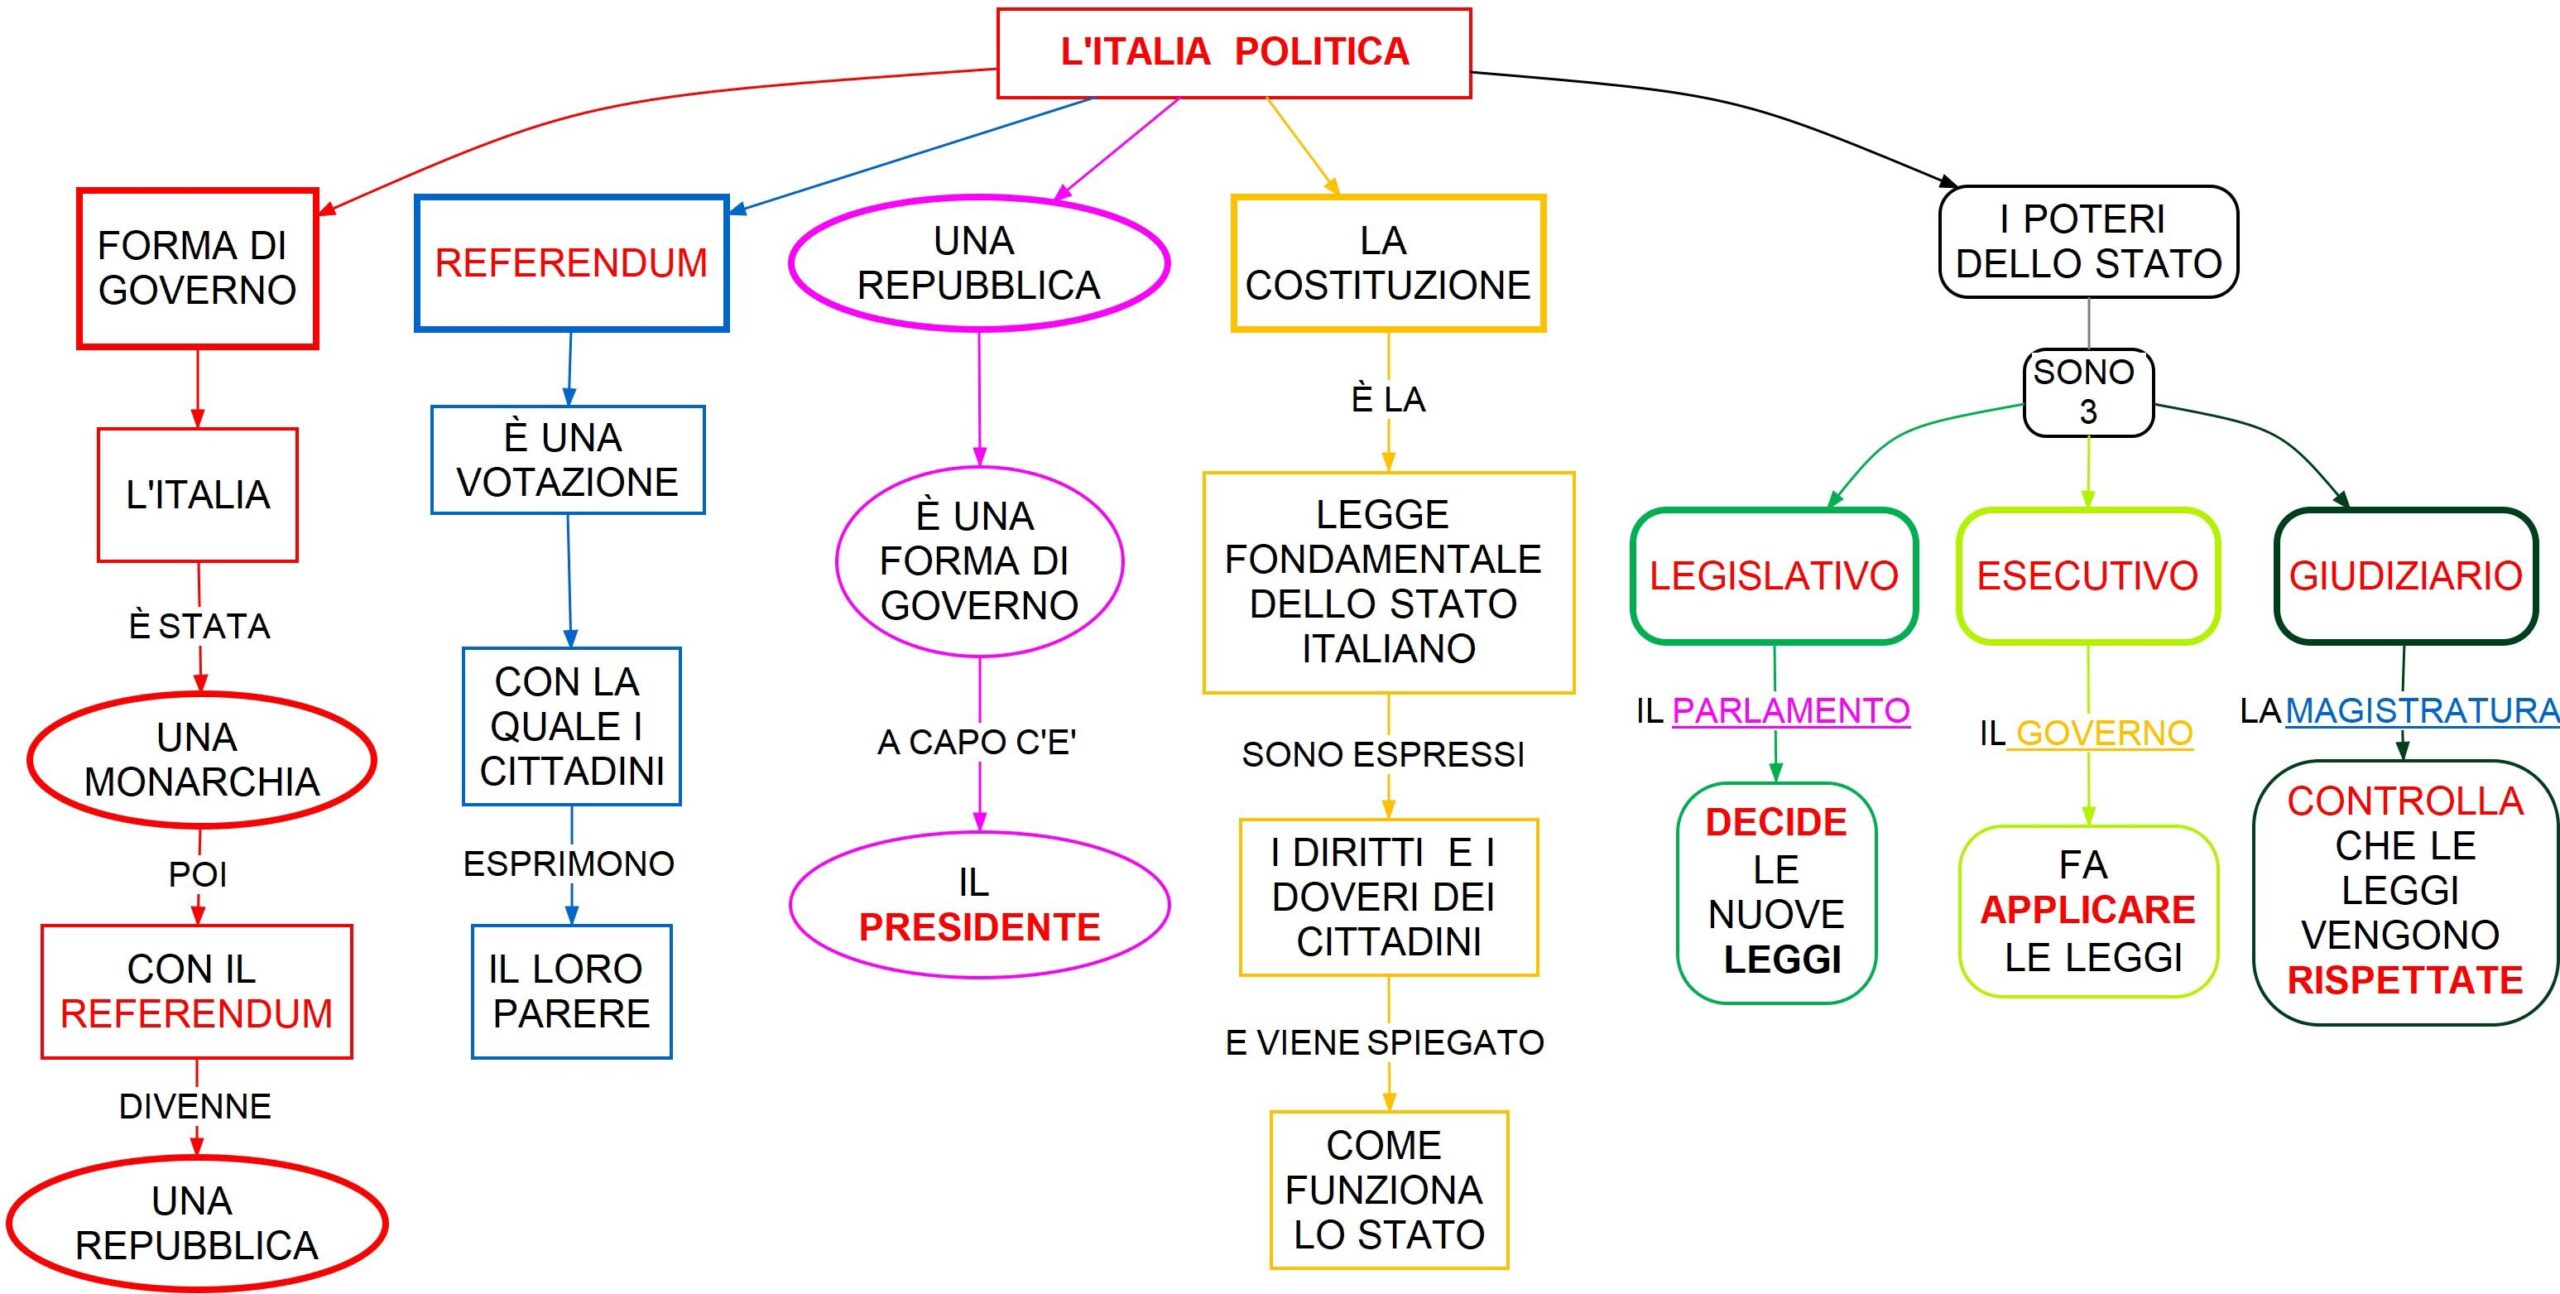 l'Italia politica